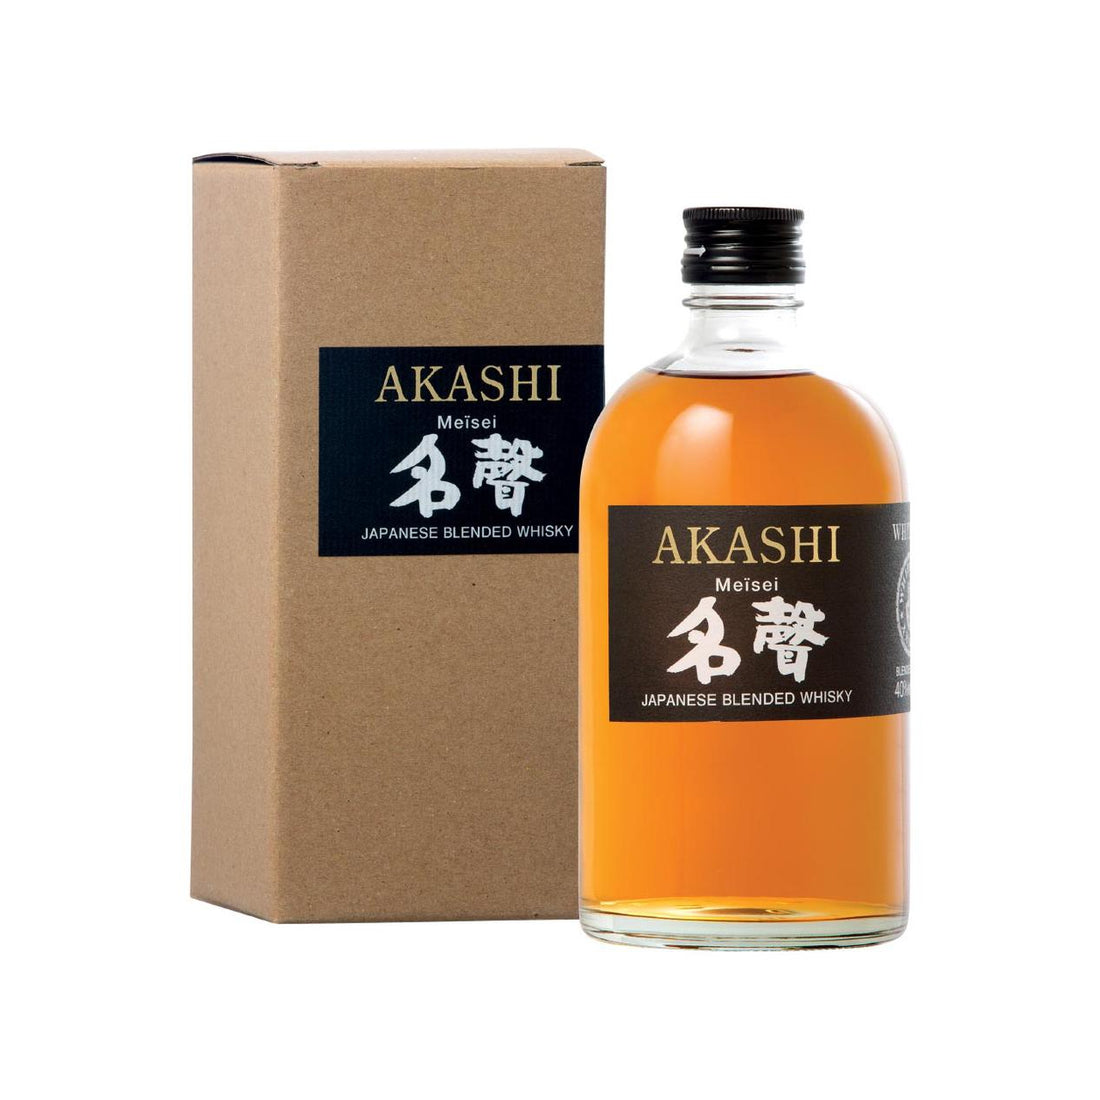 Akashi White Oak Meïsei Japanese Blended Whisky